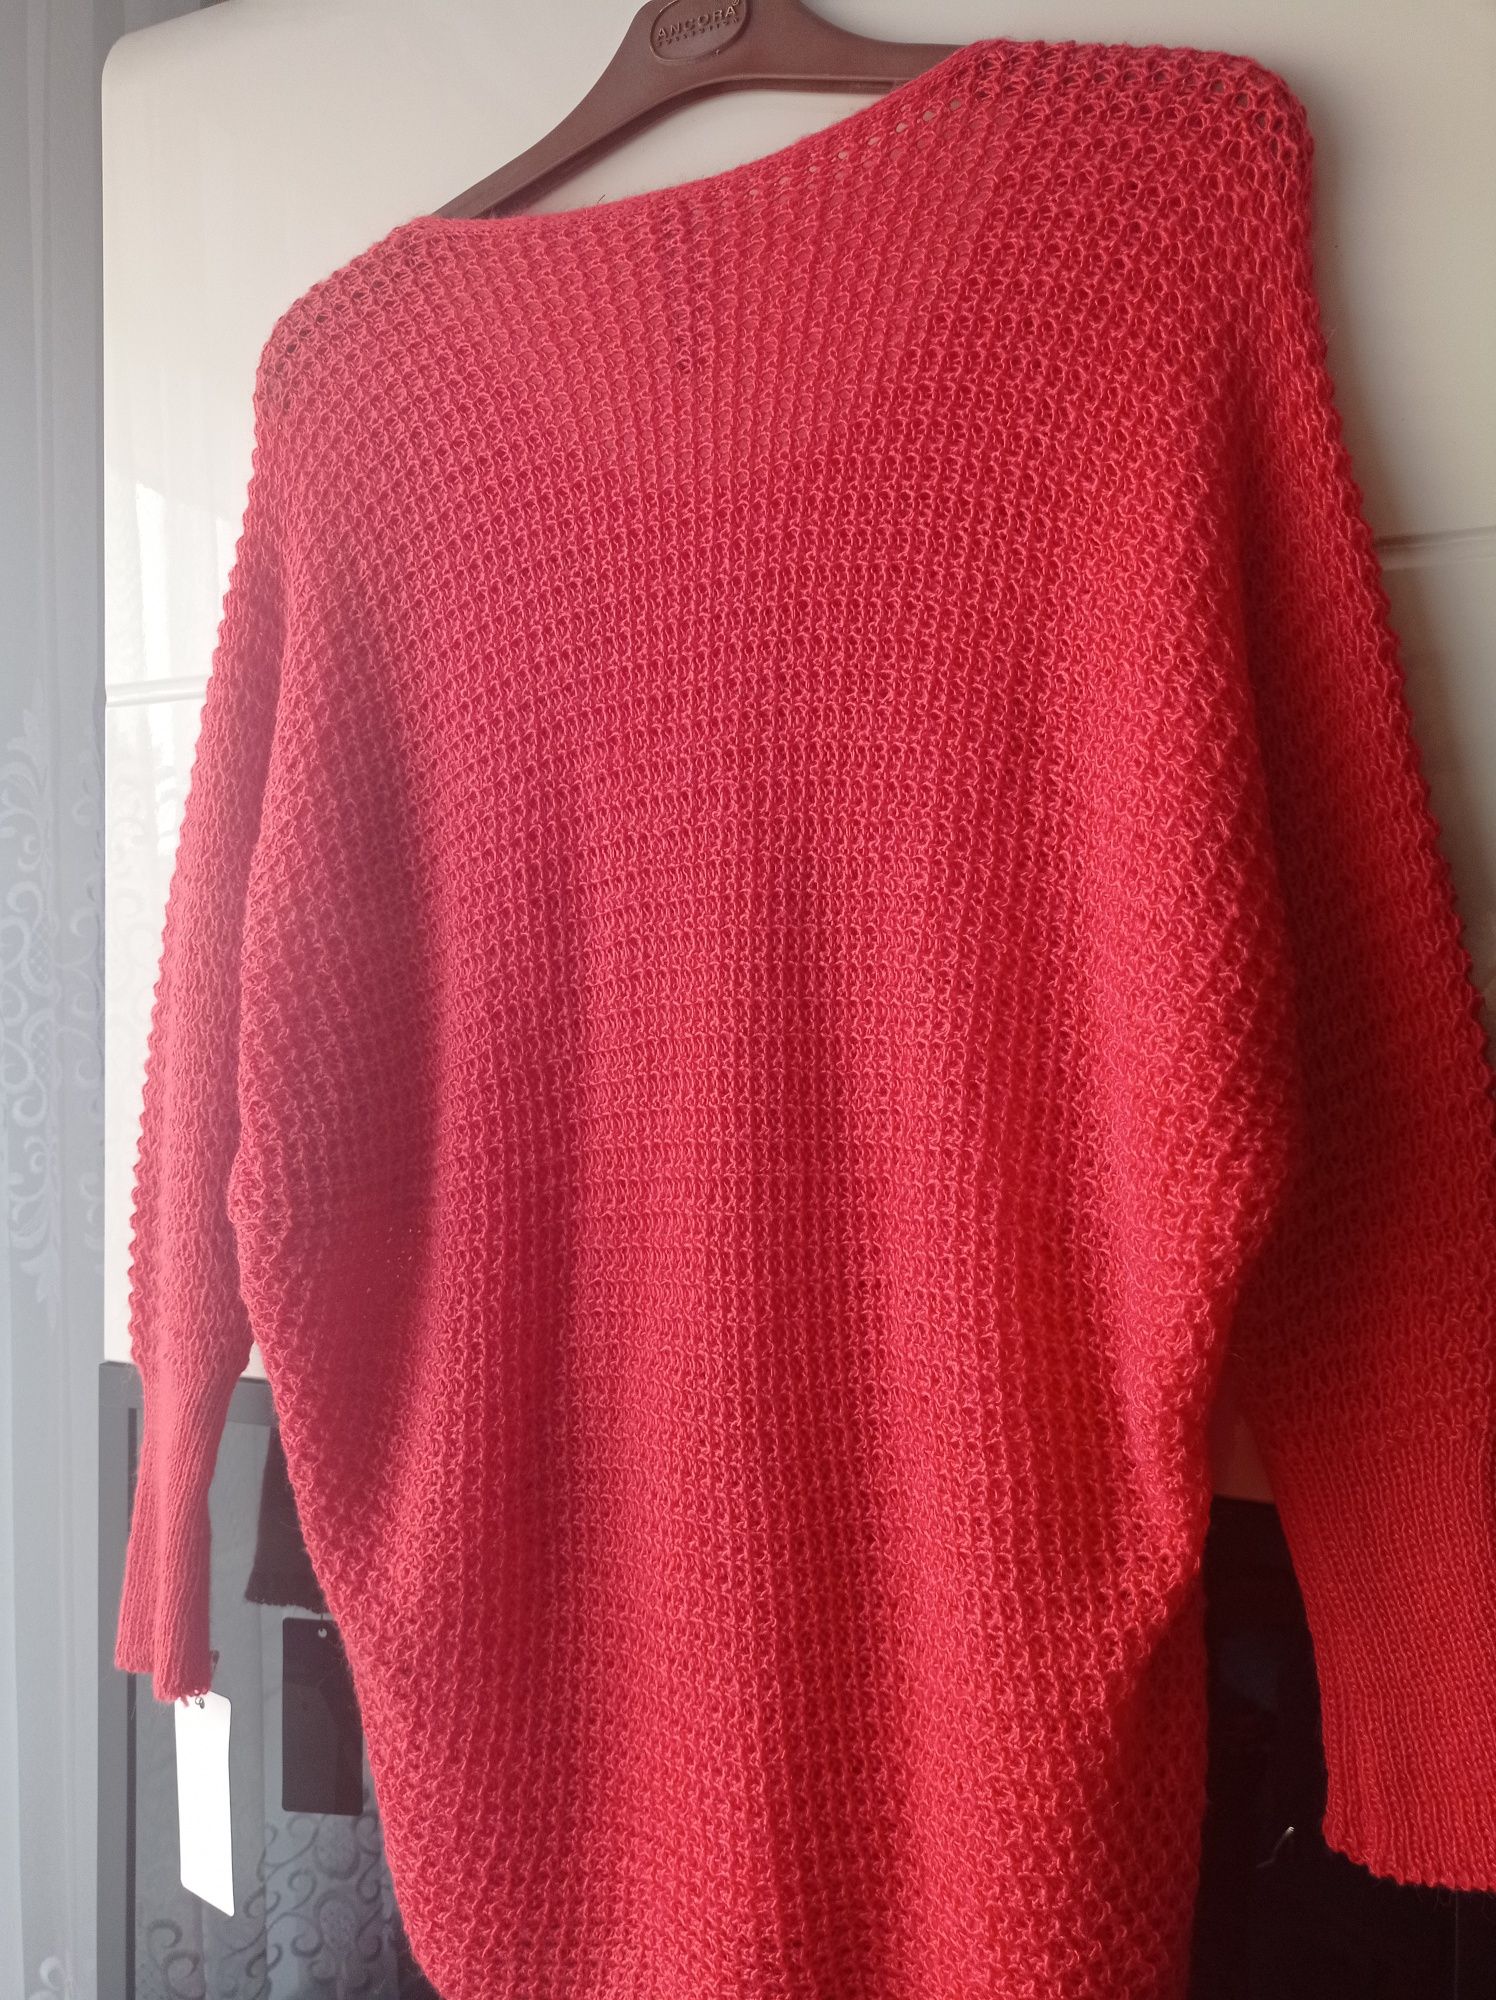 Sweterek damski włoski nowy biust 120